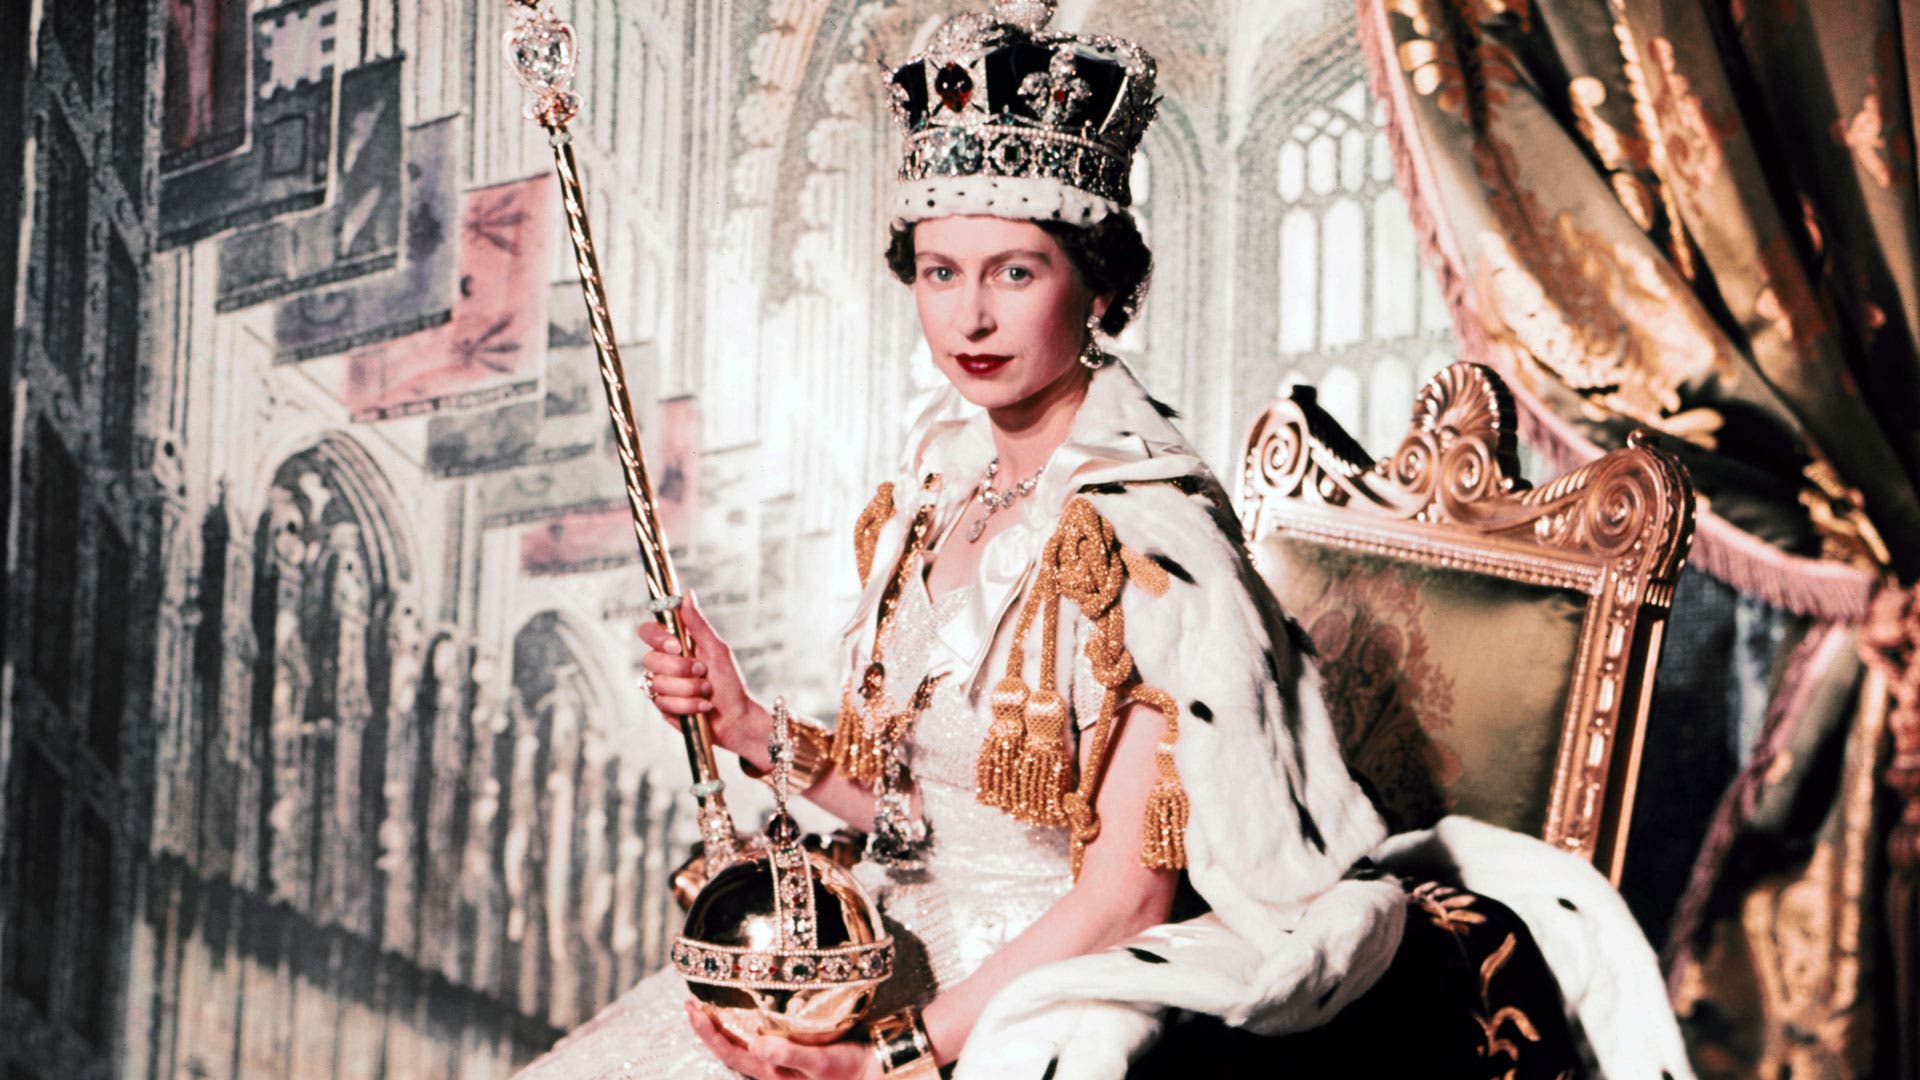 HISTORY: Queen Elizabeth II